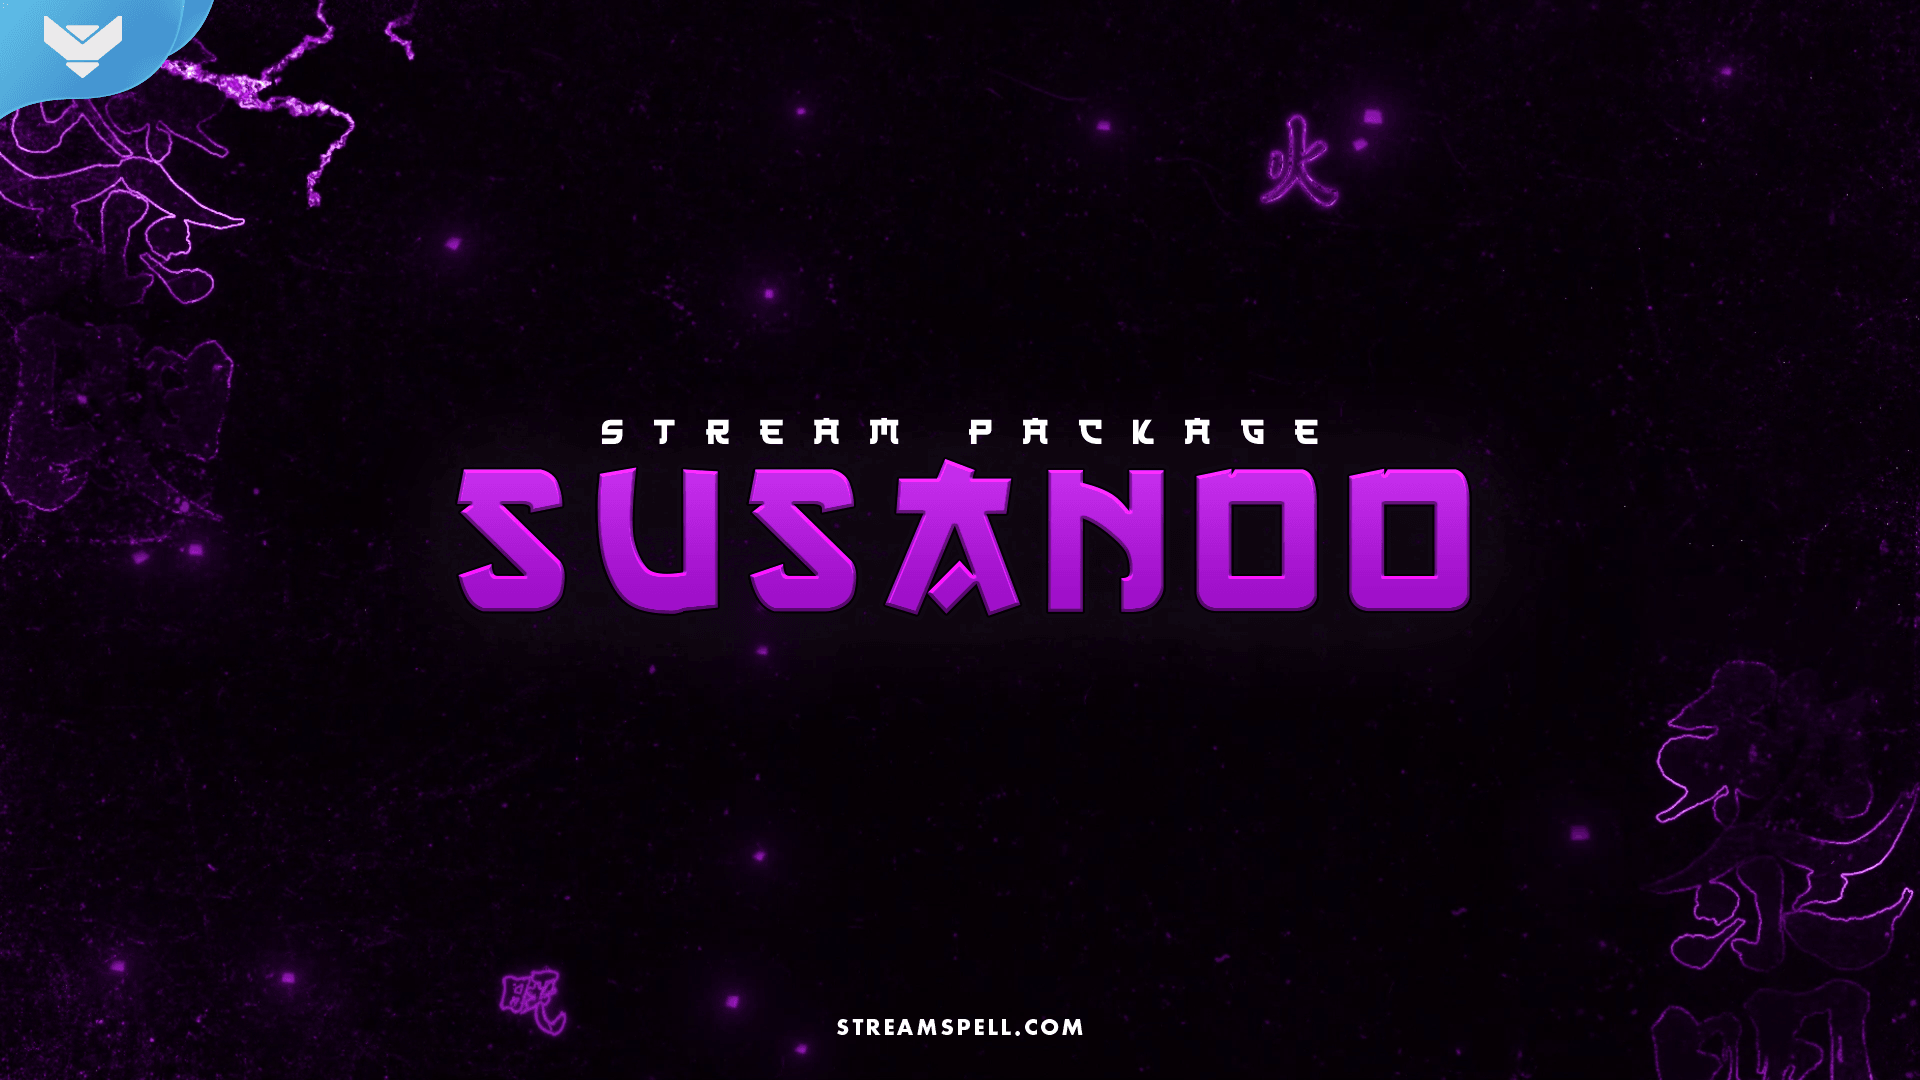 Susanoo Stream Package – StreamSpell